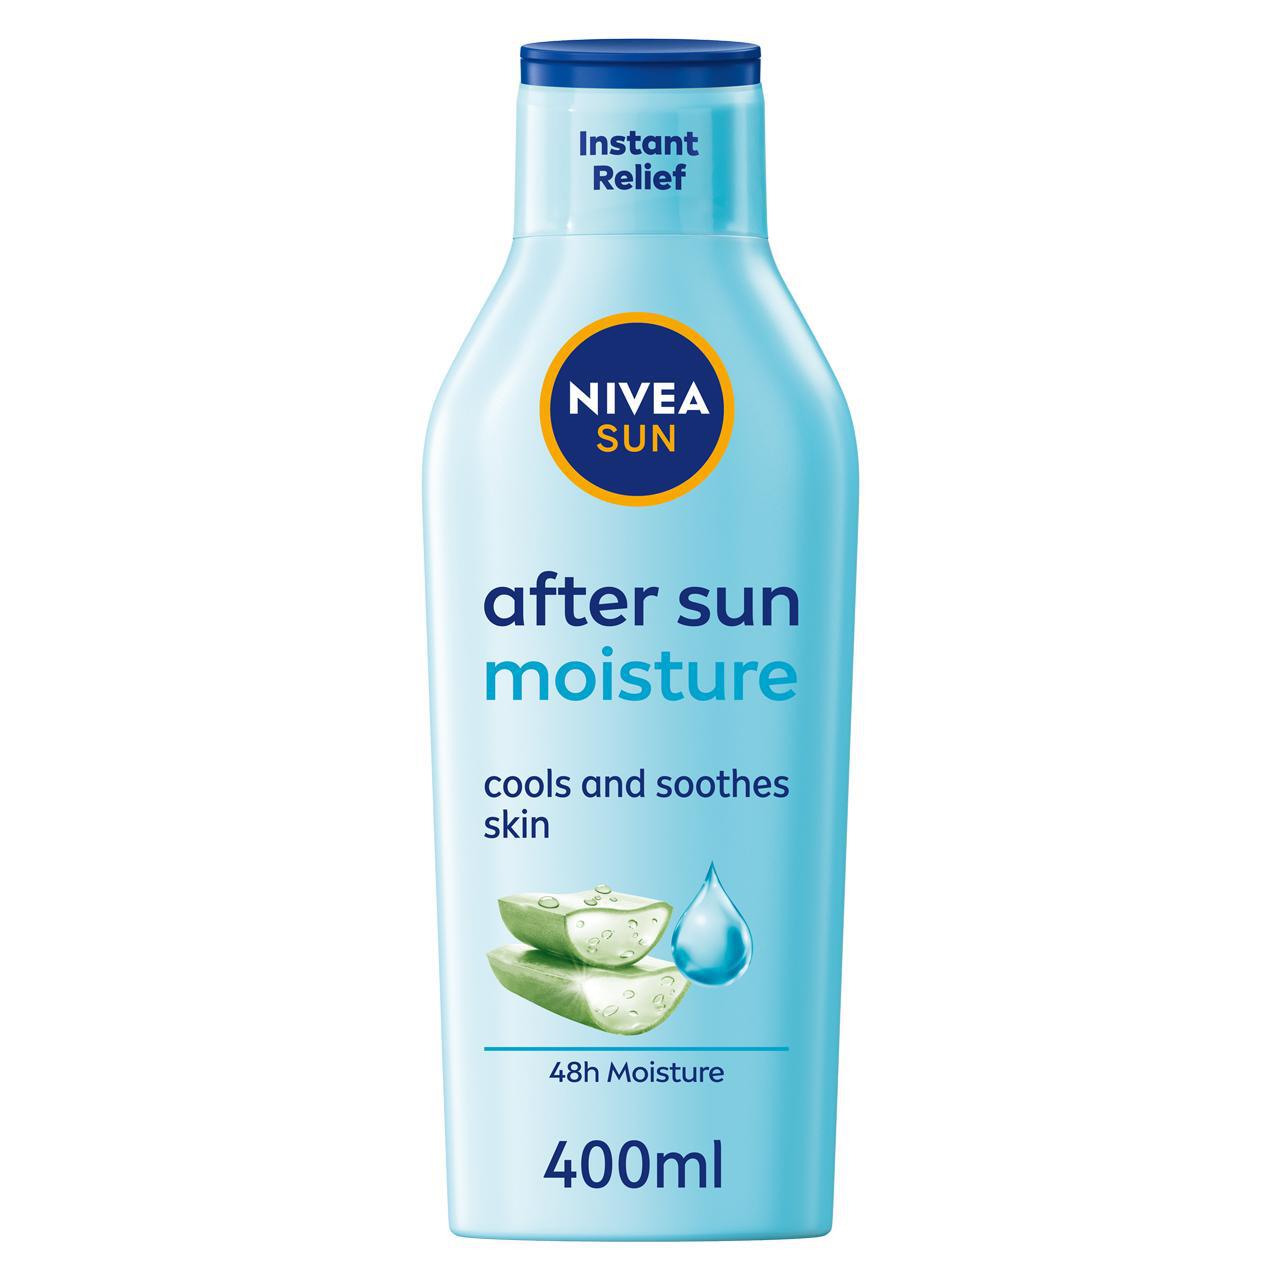 NIVEA SUN After Sun Lotion 400ml